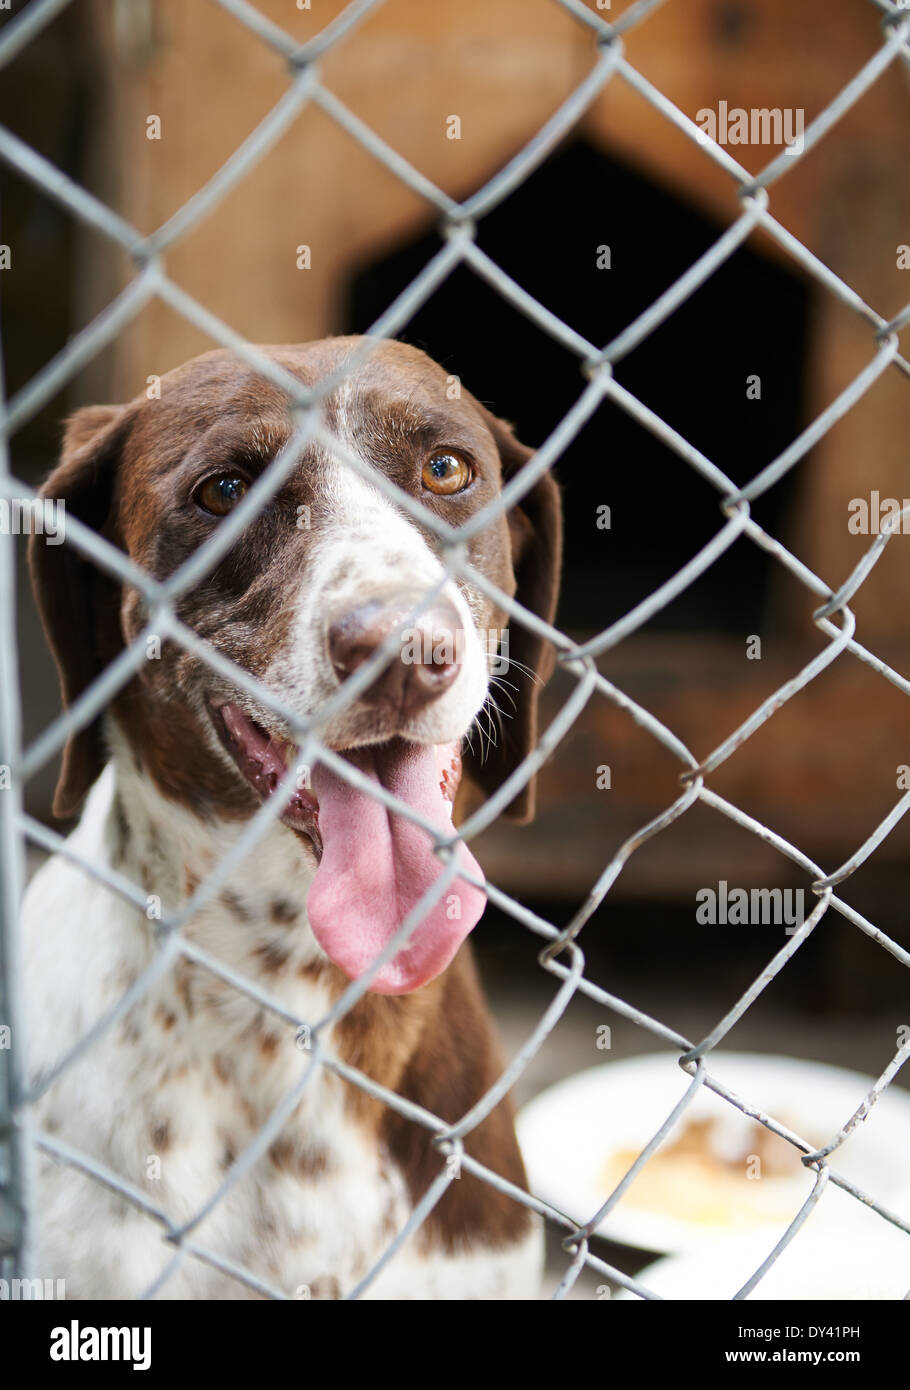 Les chiens dans une cage avec sa langue hanging out Banque D'Images